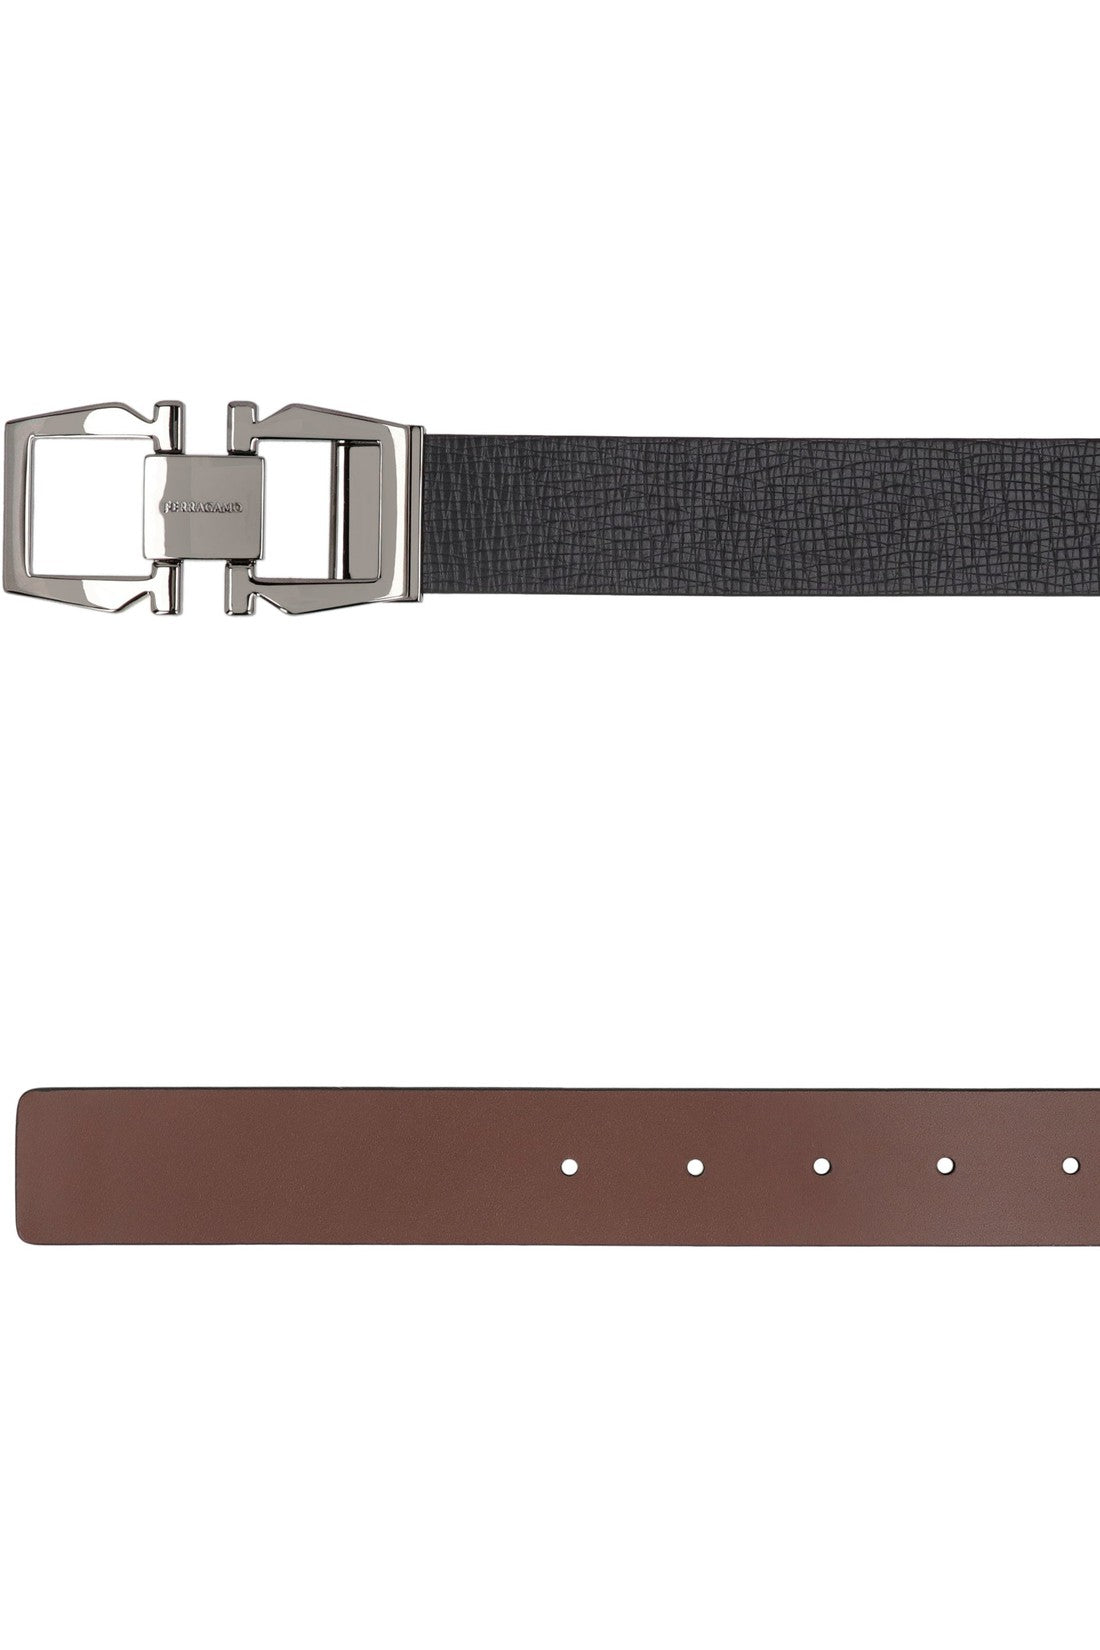 FERRAGAMO-OUTLET-SALE-Reversible leather belt-ARCHIVIST